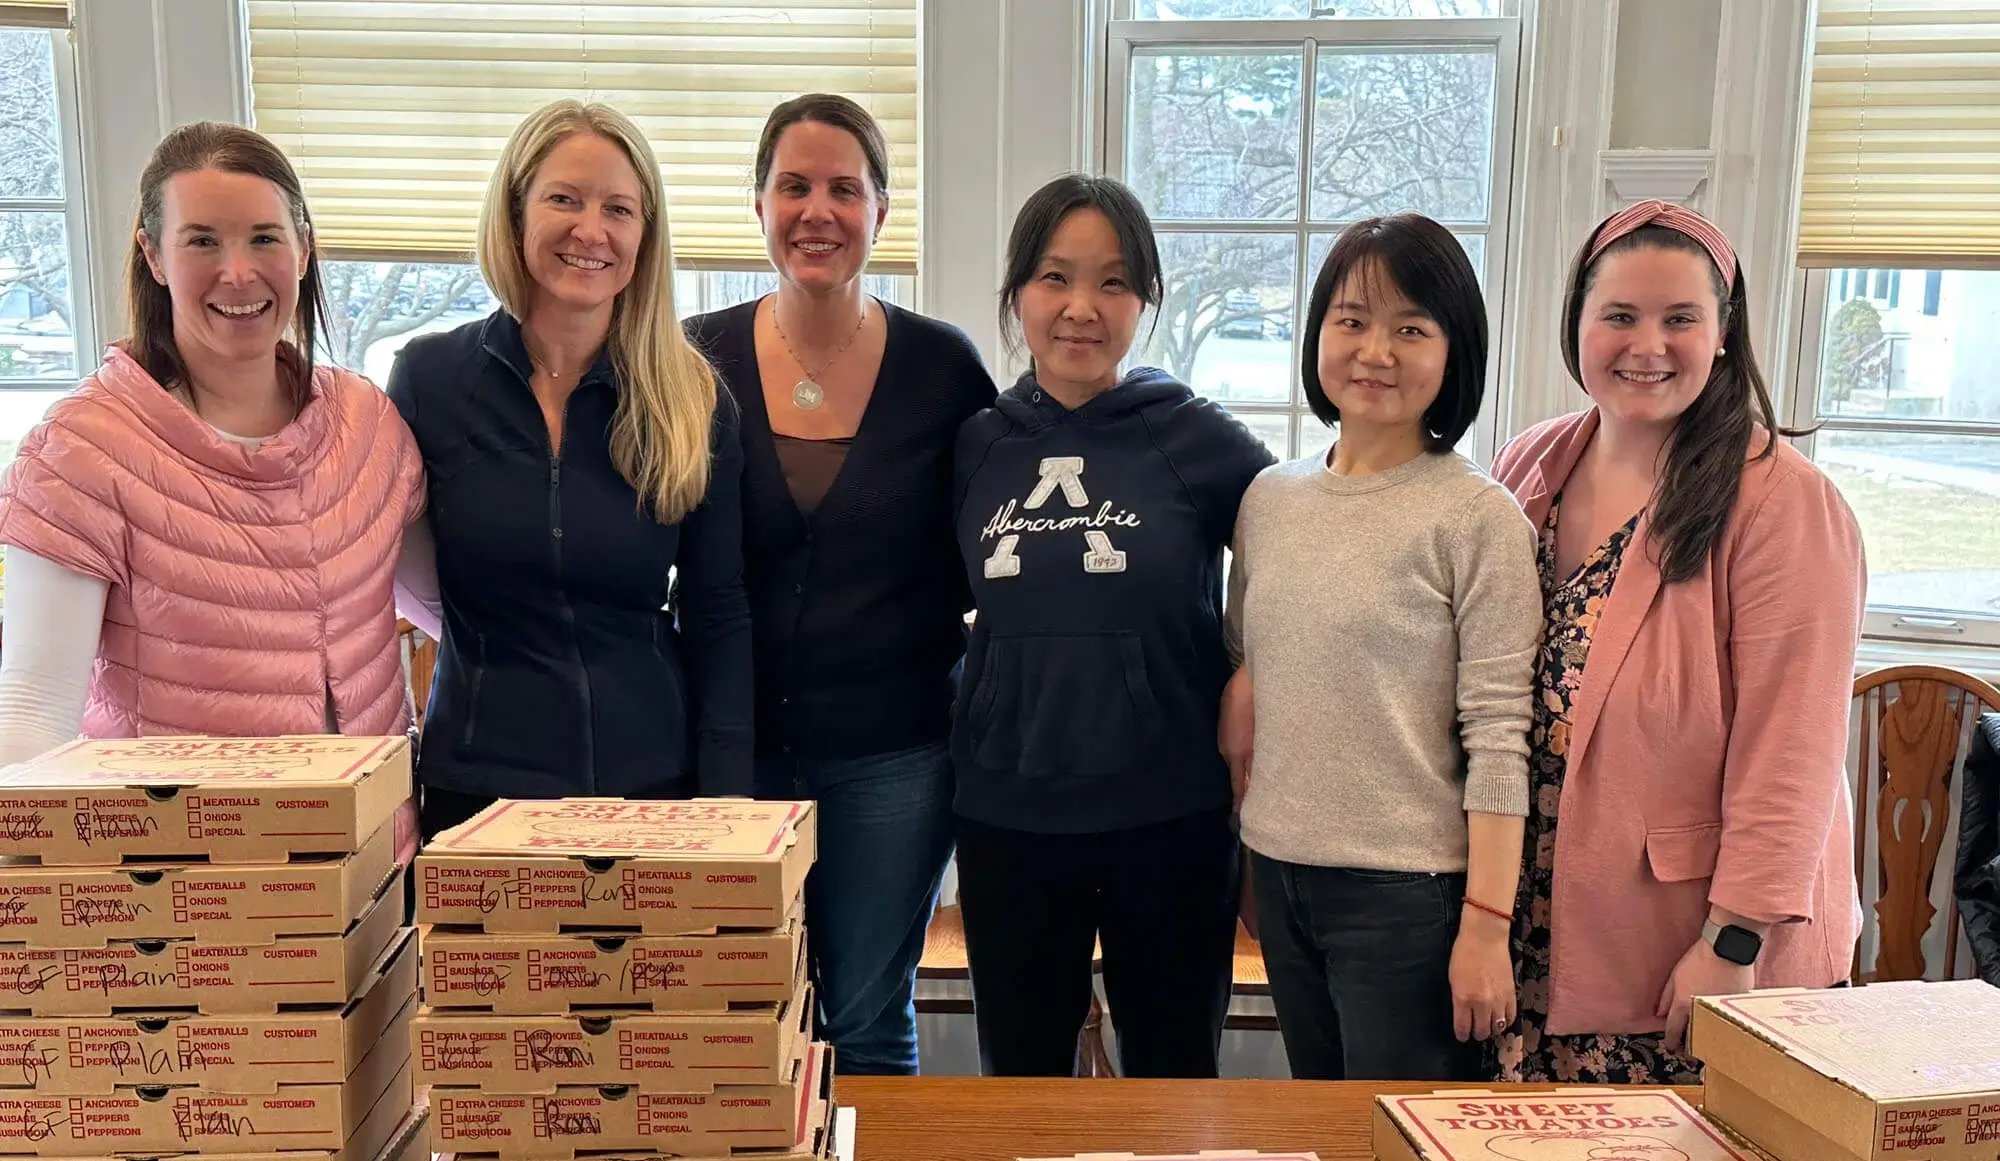 Agradecimiento al personal docente: mujeres detrás de cajas de pizza